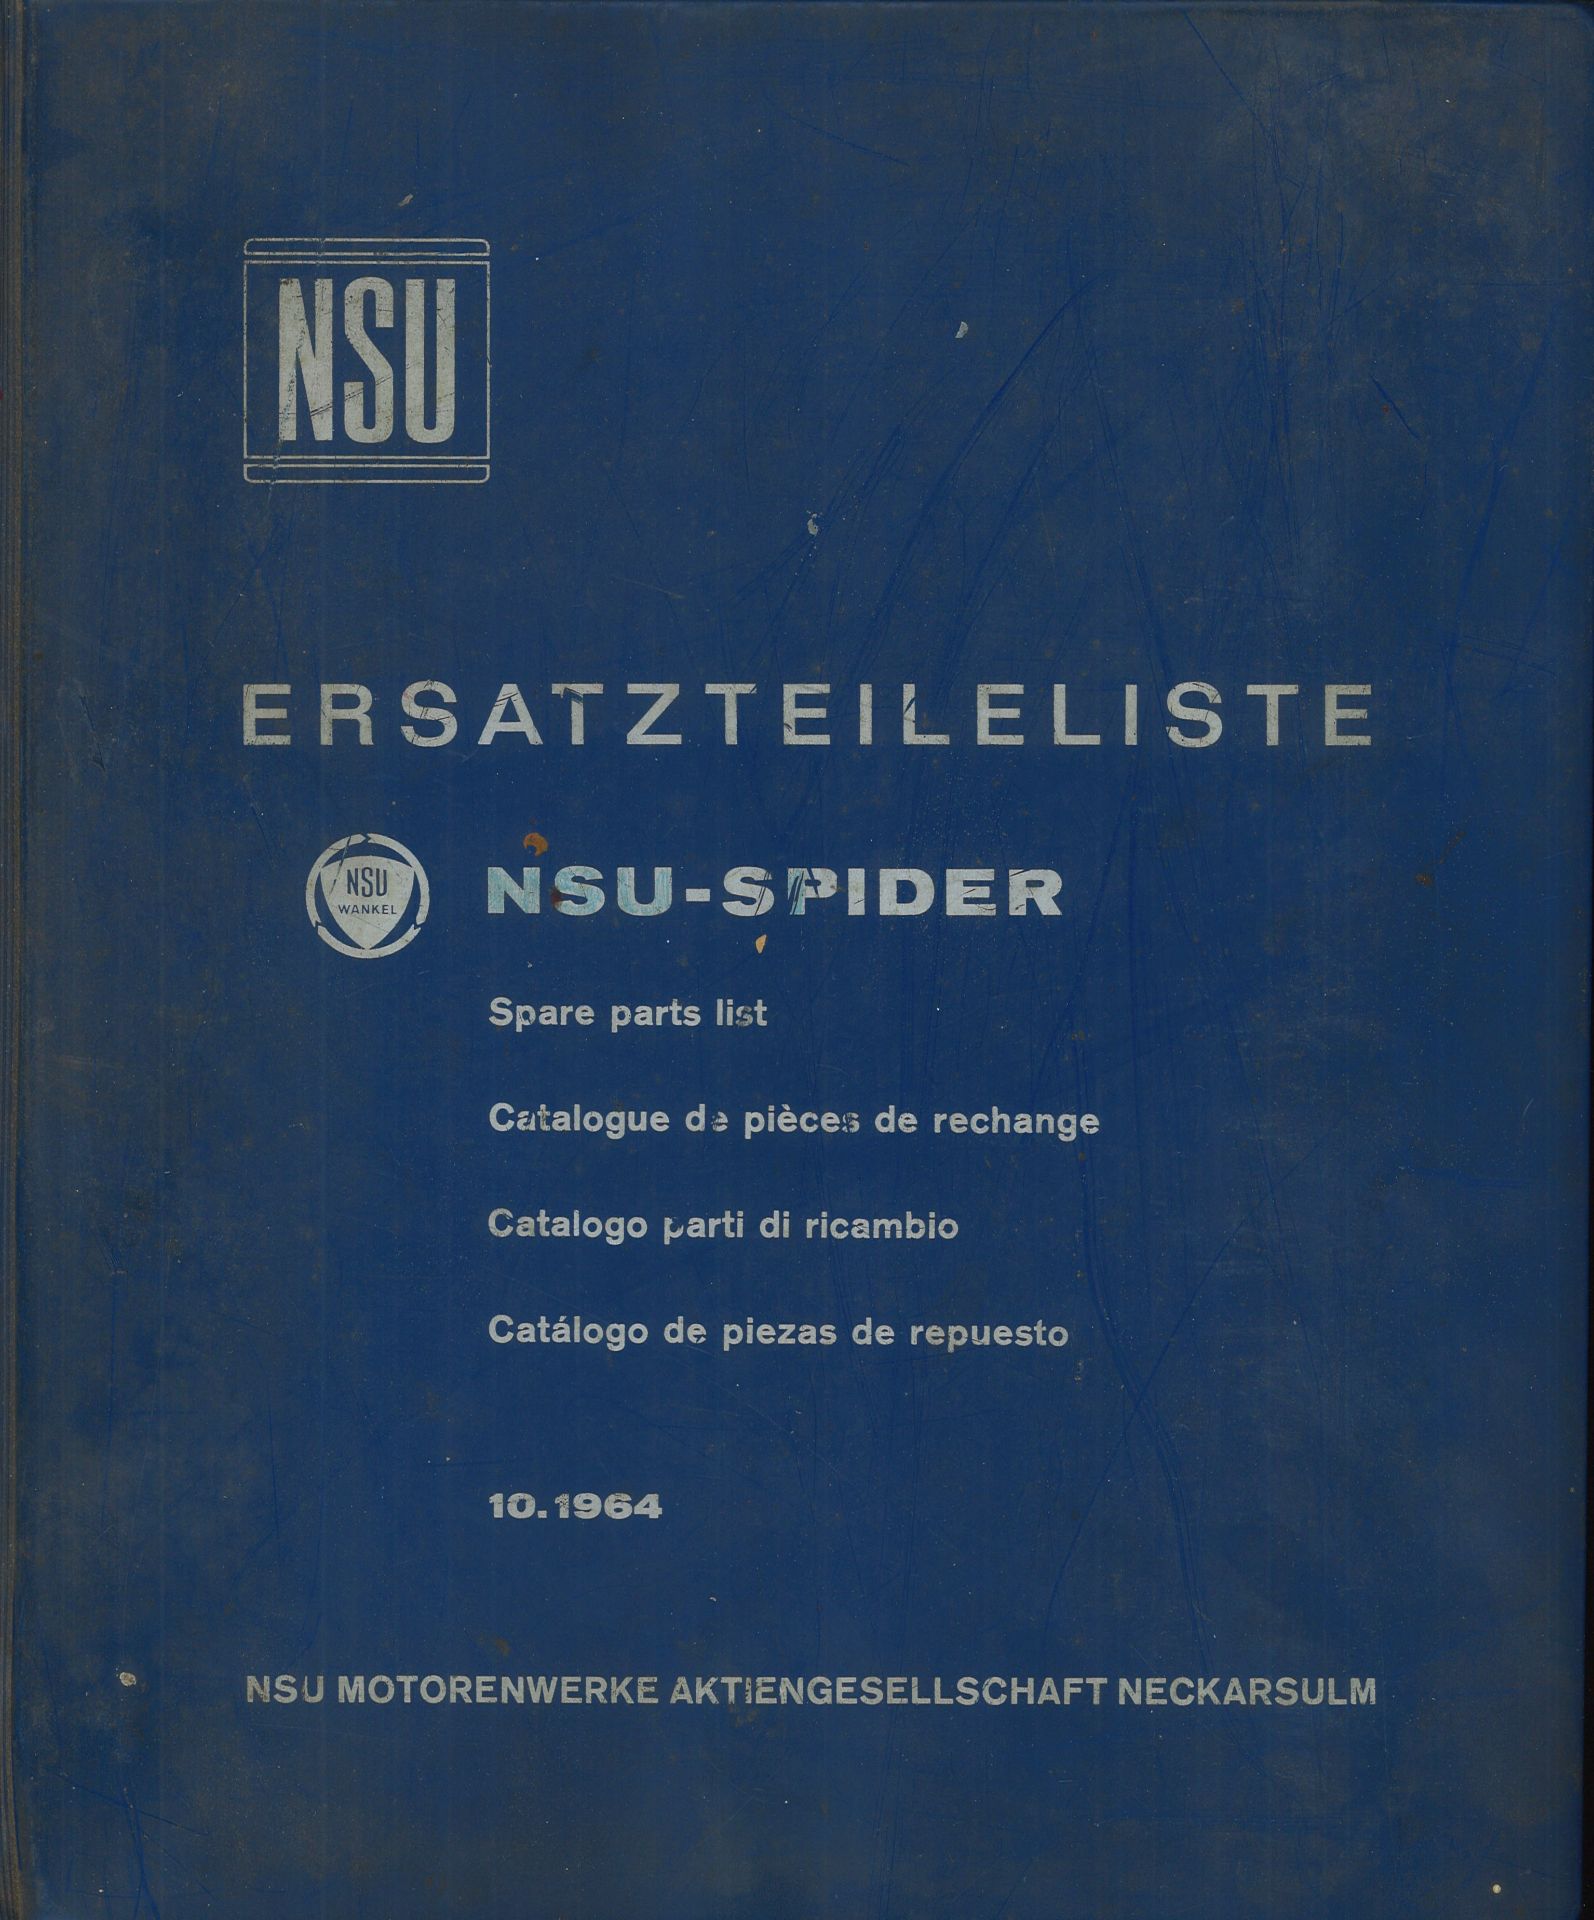 Aus Oldtimer Sammlung! NSU Ersatzteileliste "NSU - Spider" 10.1964. NSU Motorwerke